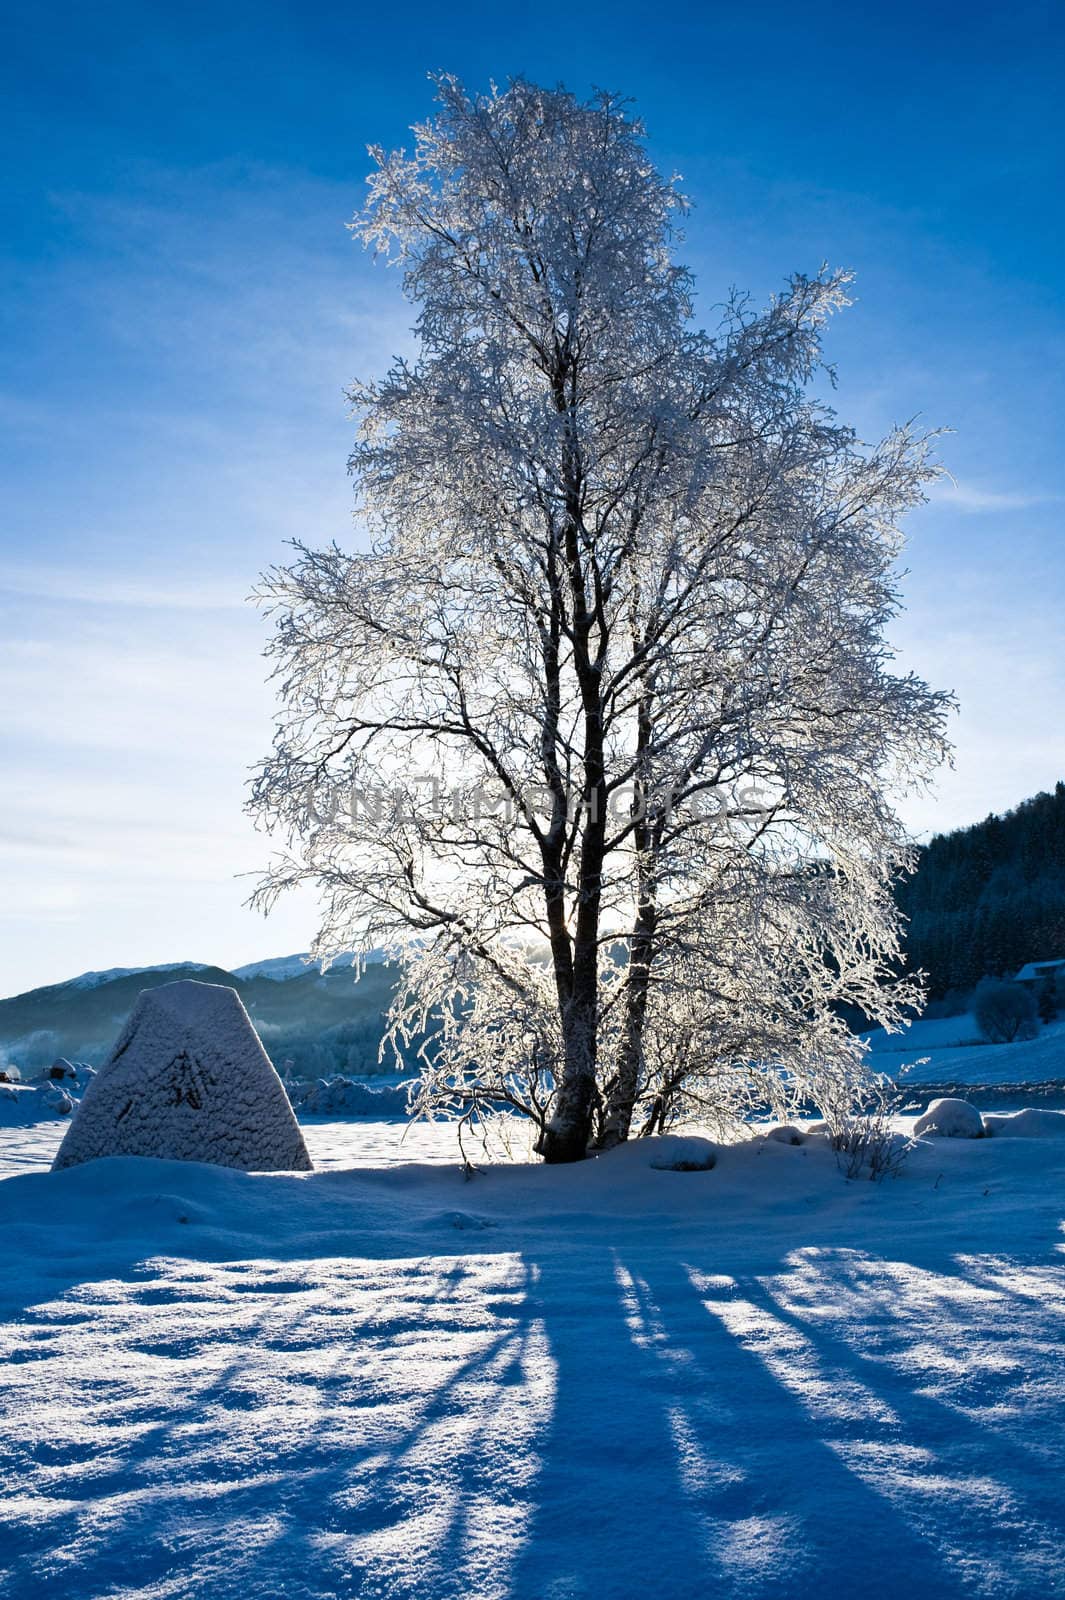  A backlit tree in Norwegian winter landscape